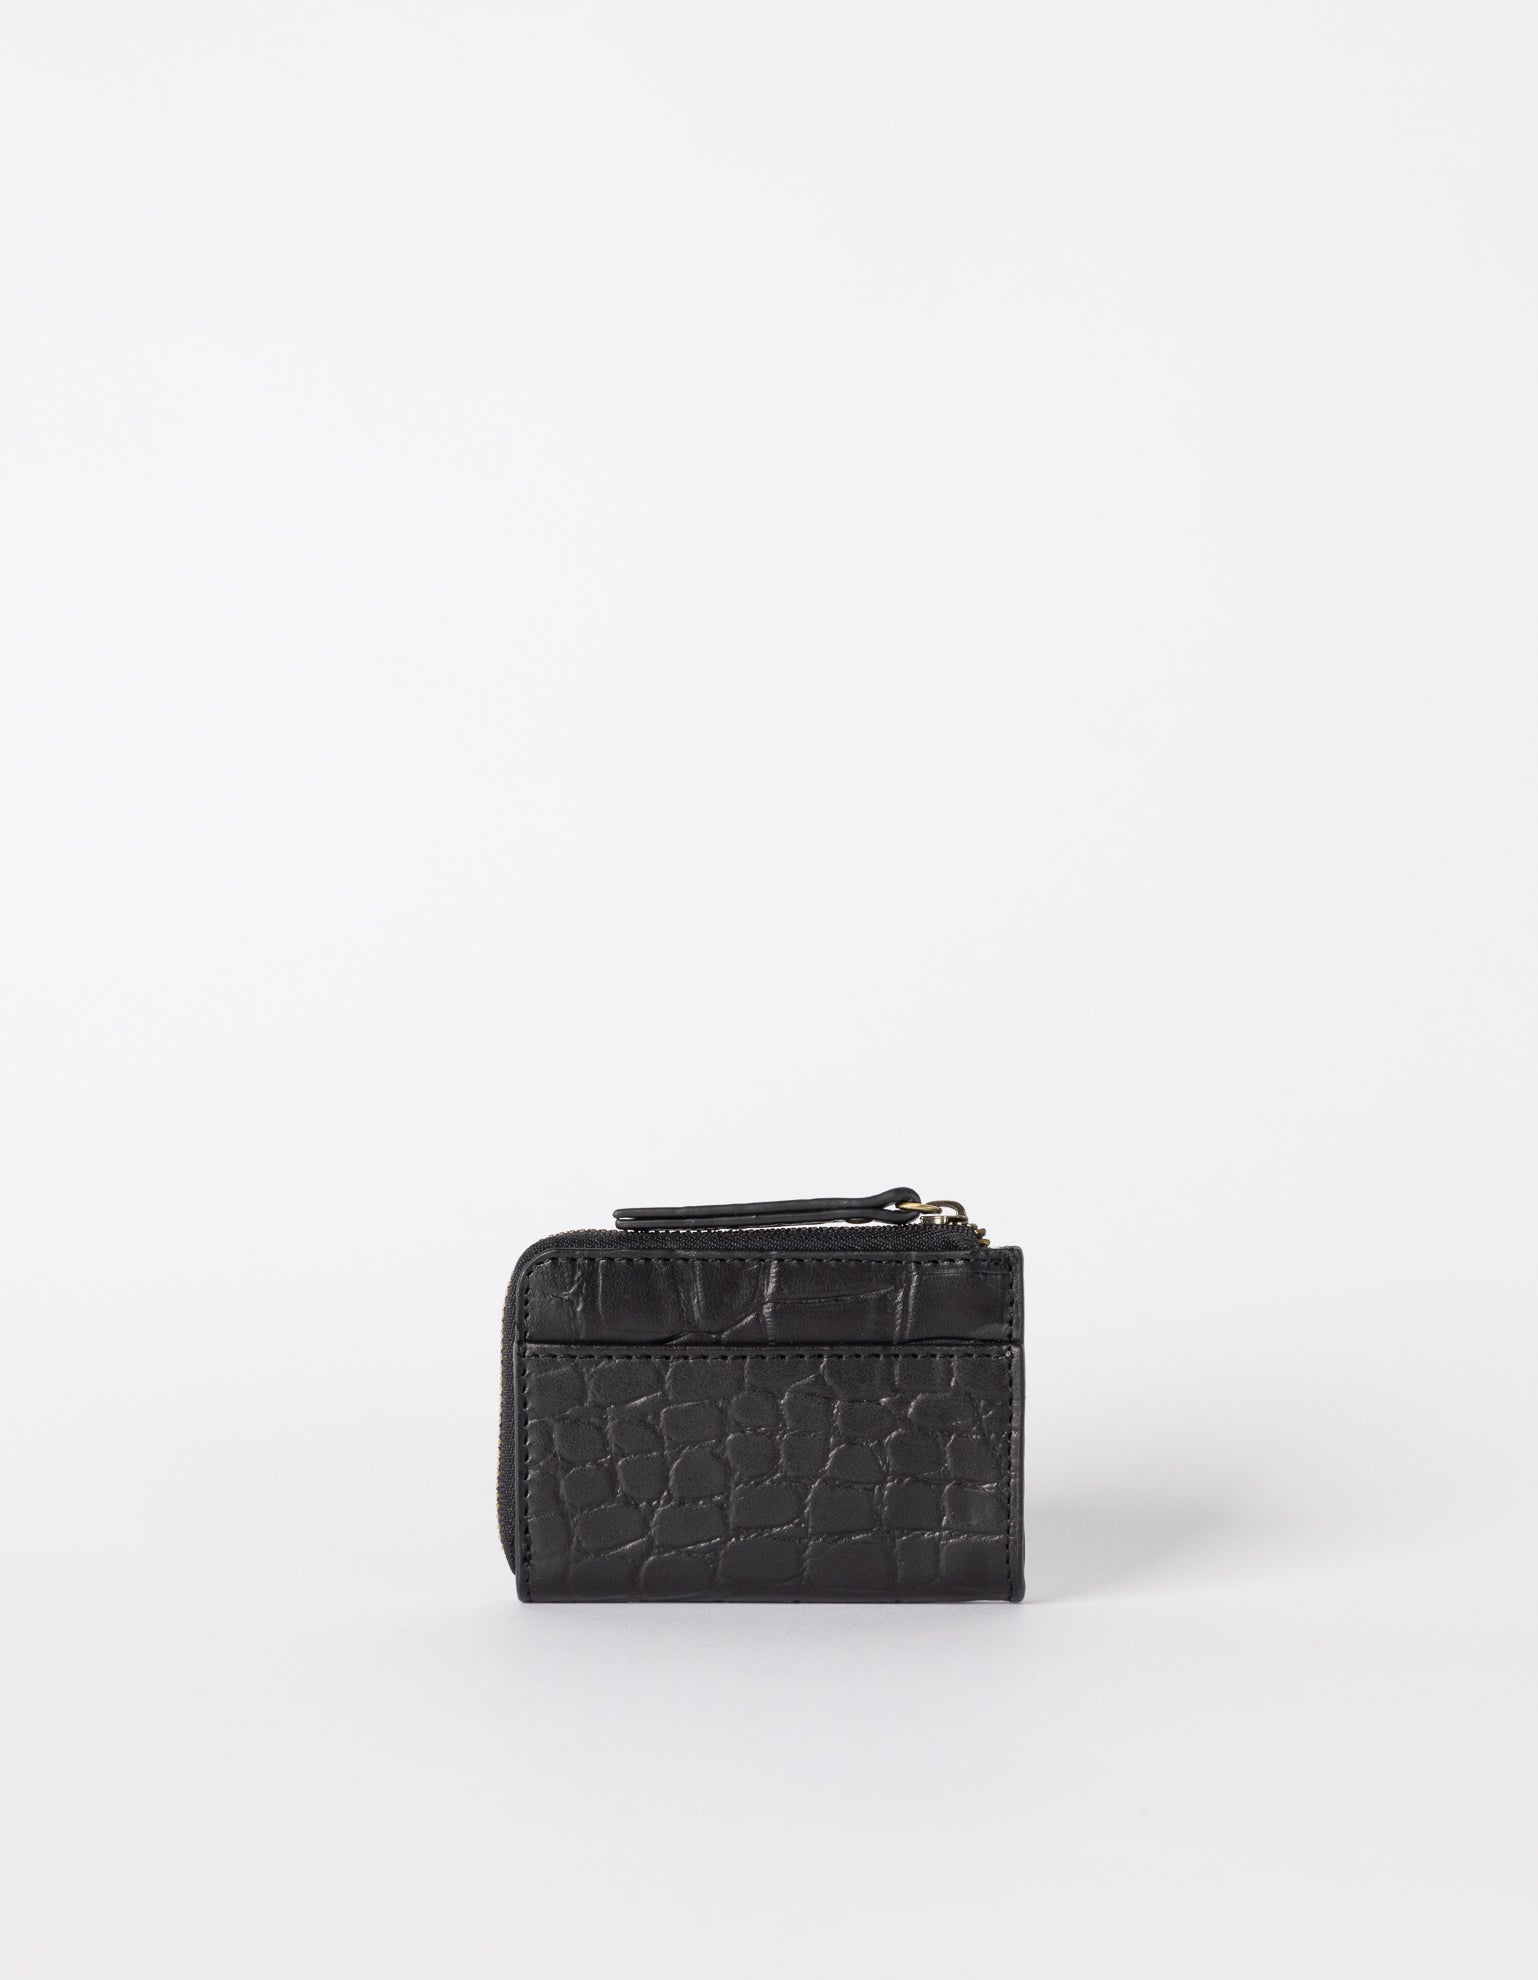 Small Black Croco coin purse. Square shape. Back image